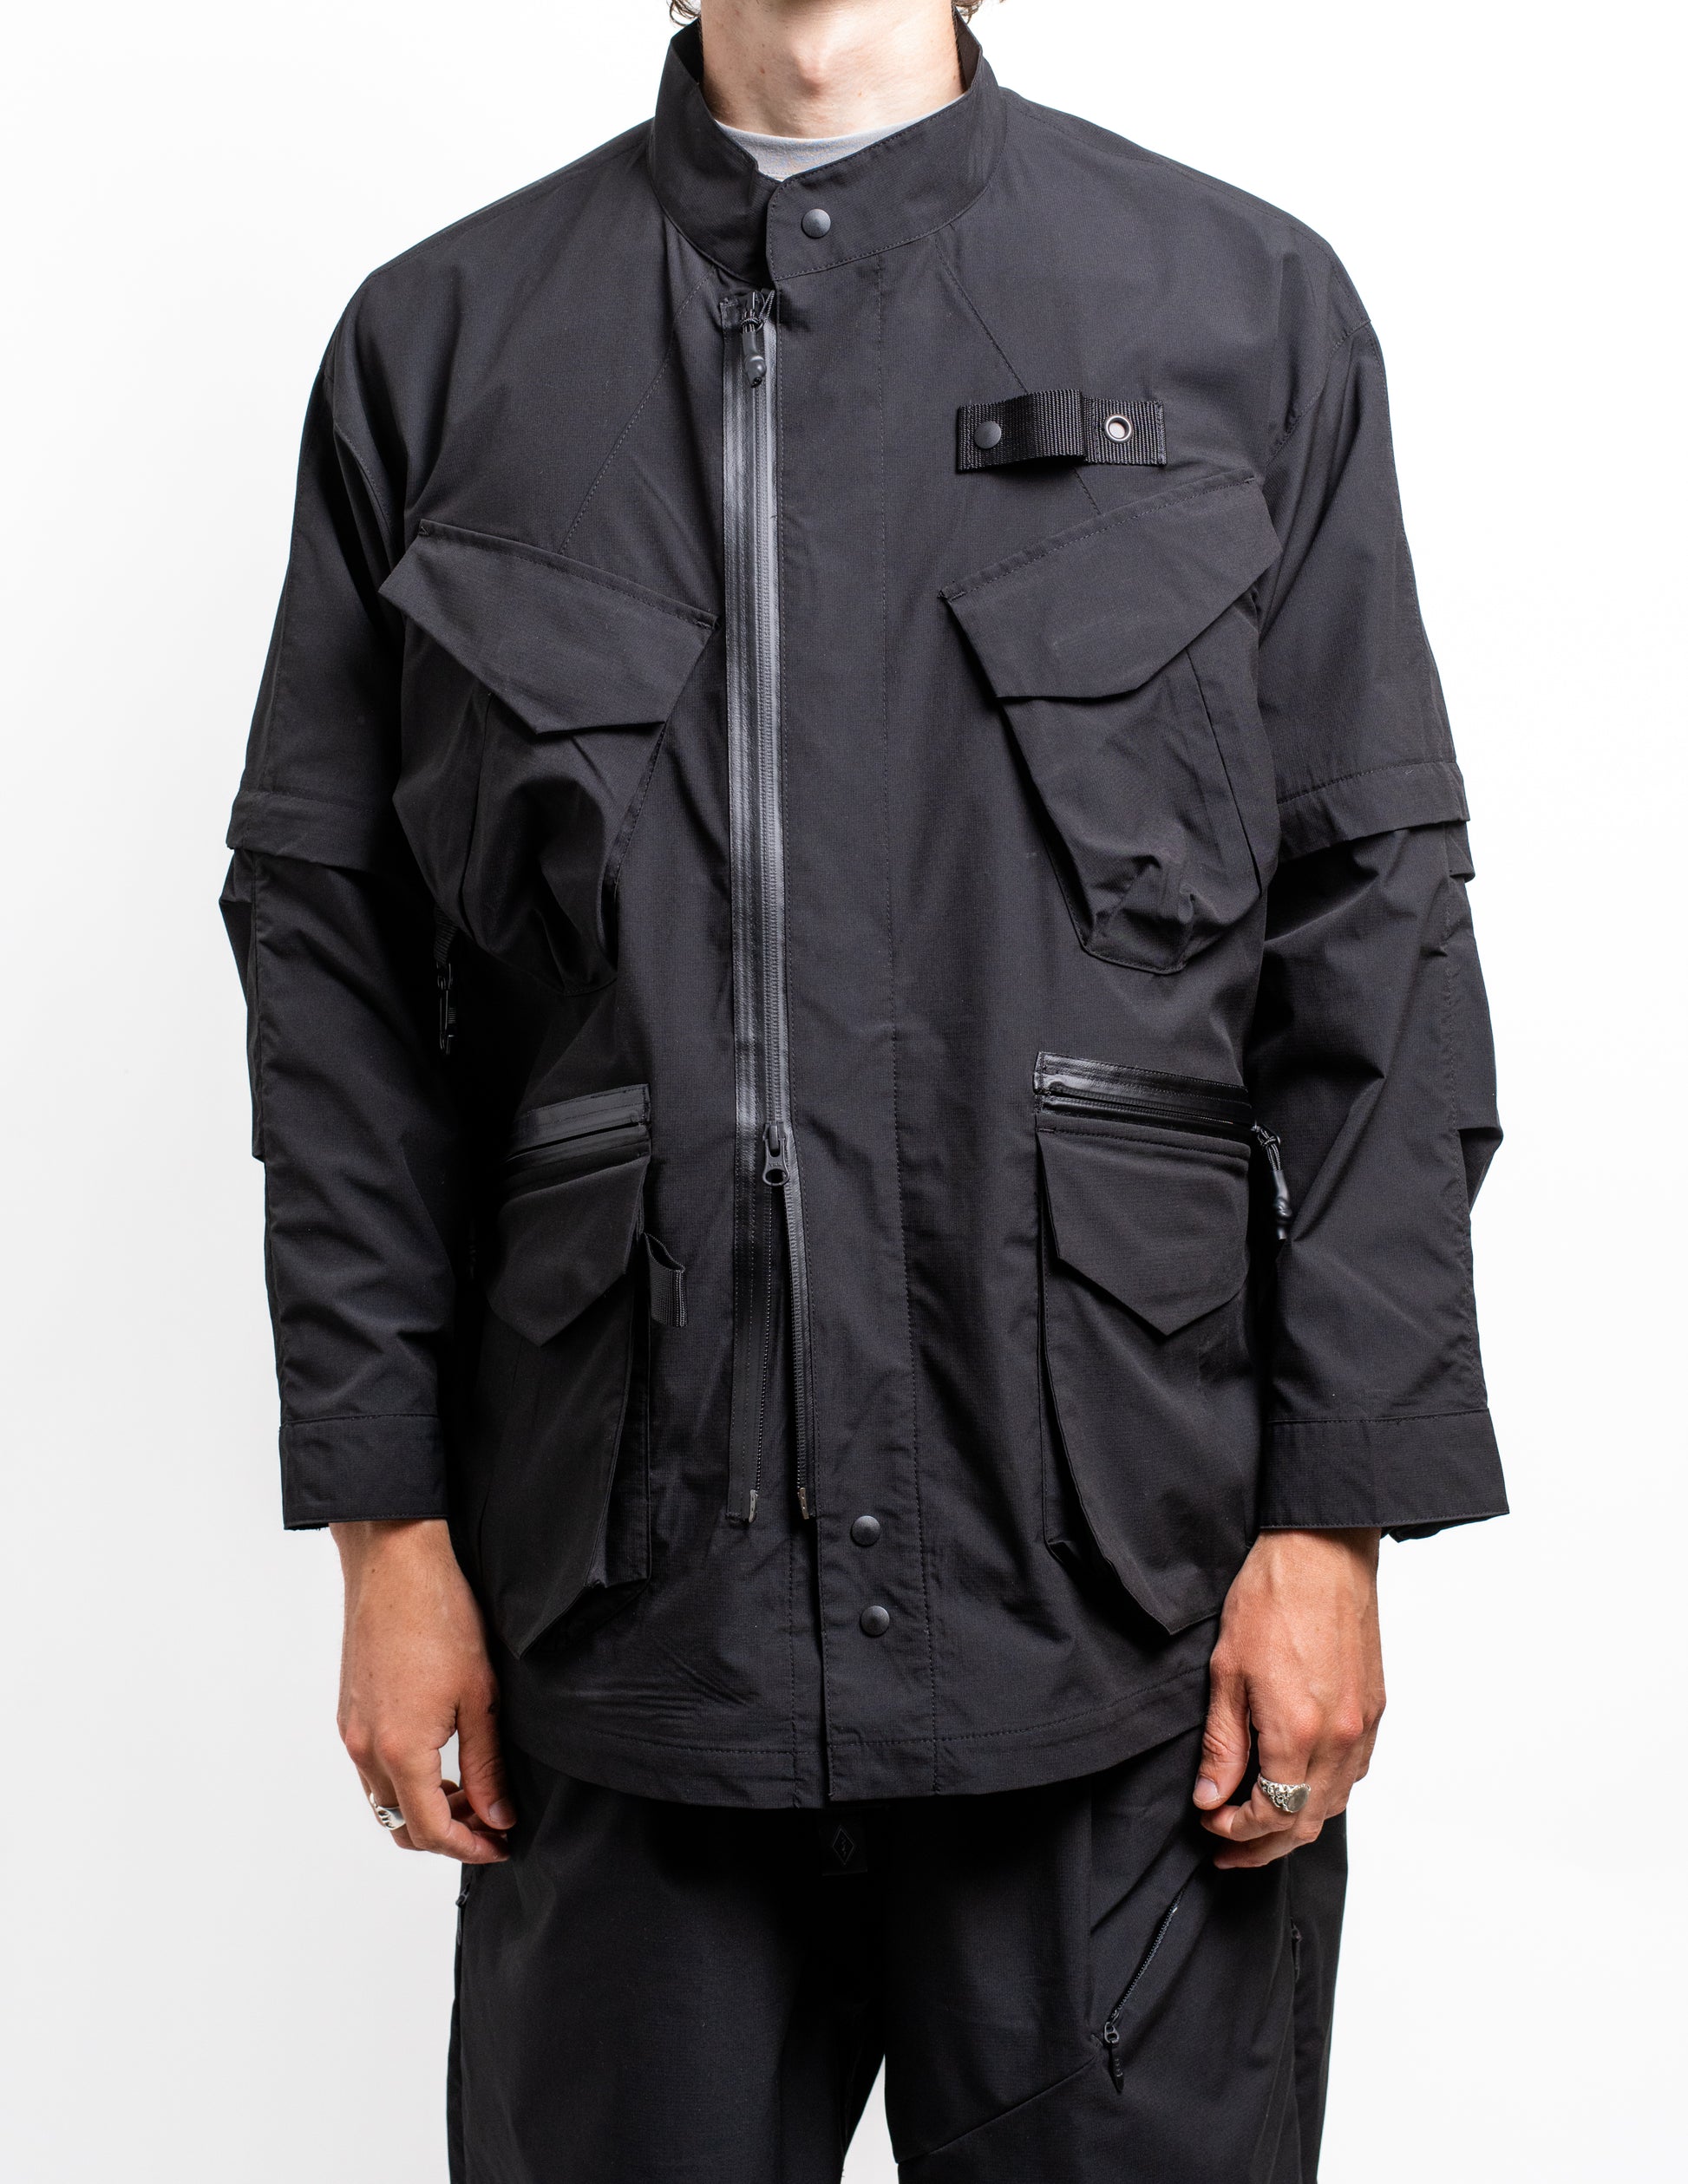 gorpcore oversized nylon jacket from Japan